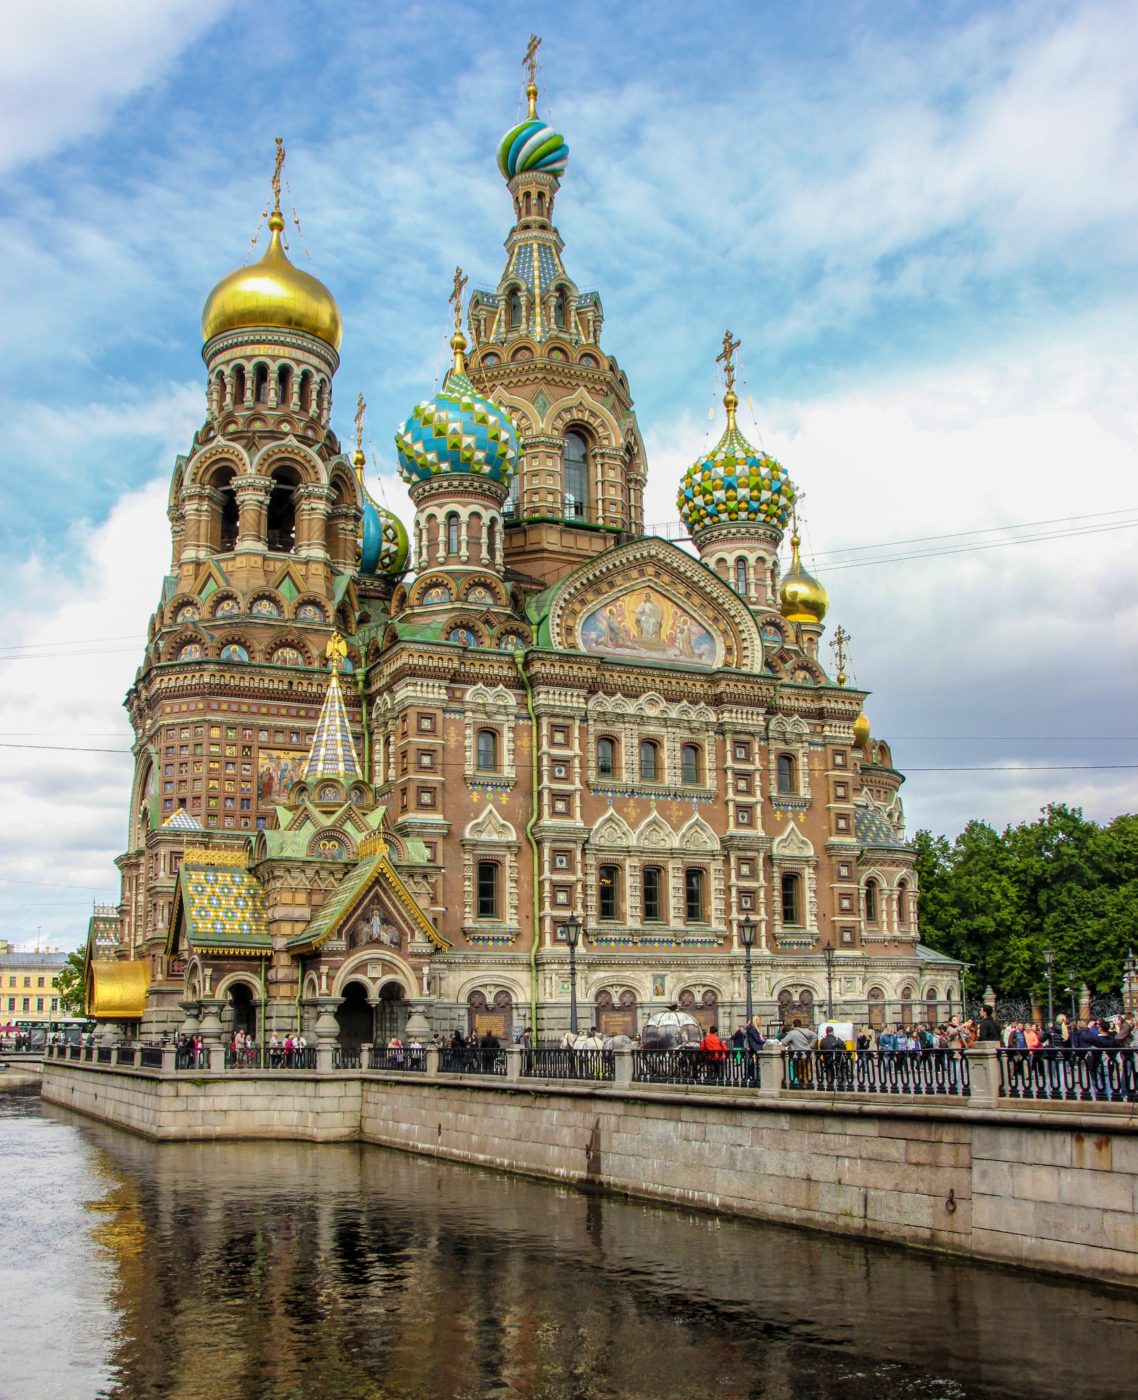 Russia's Saint Petersburg Attractions - Top Twelve Histoic Sites